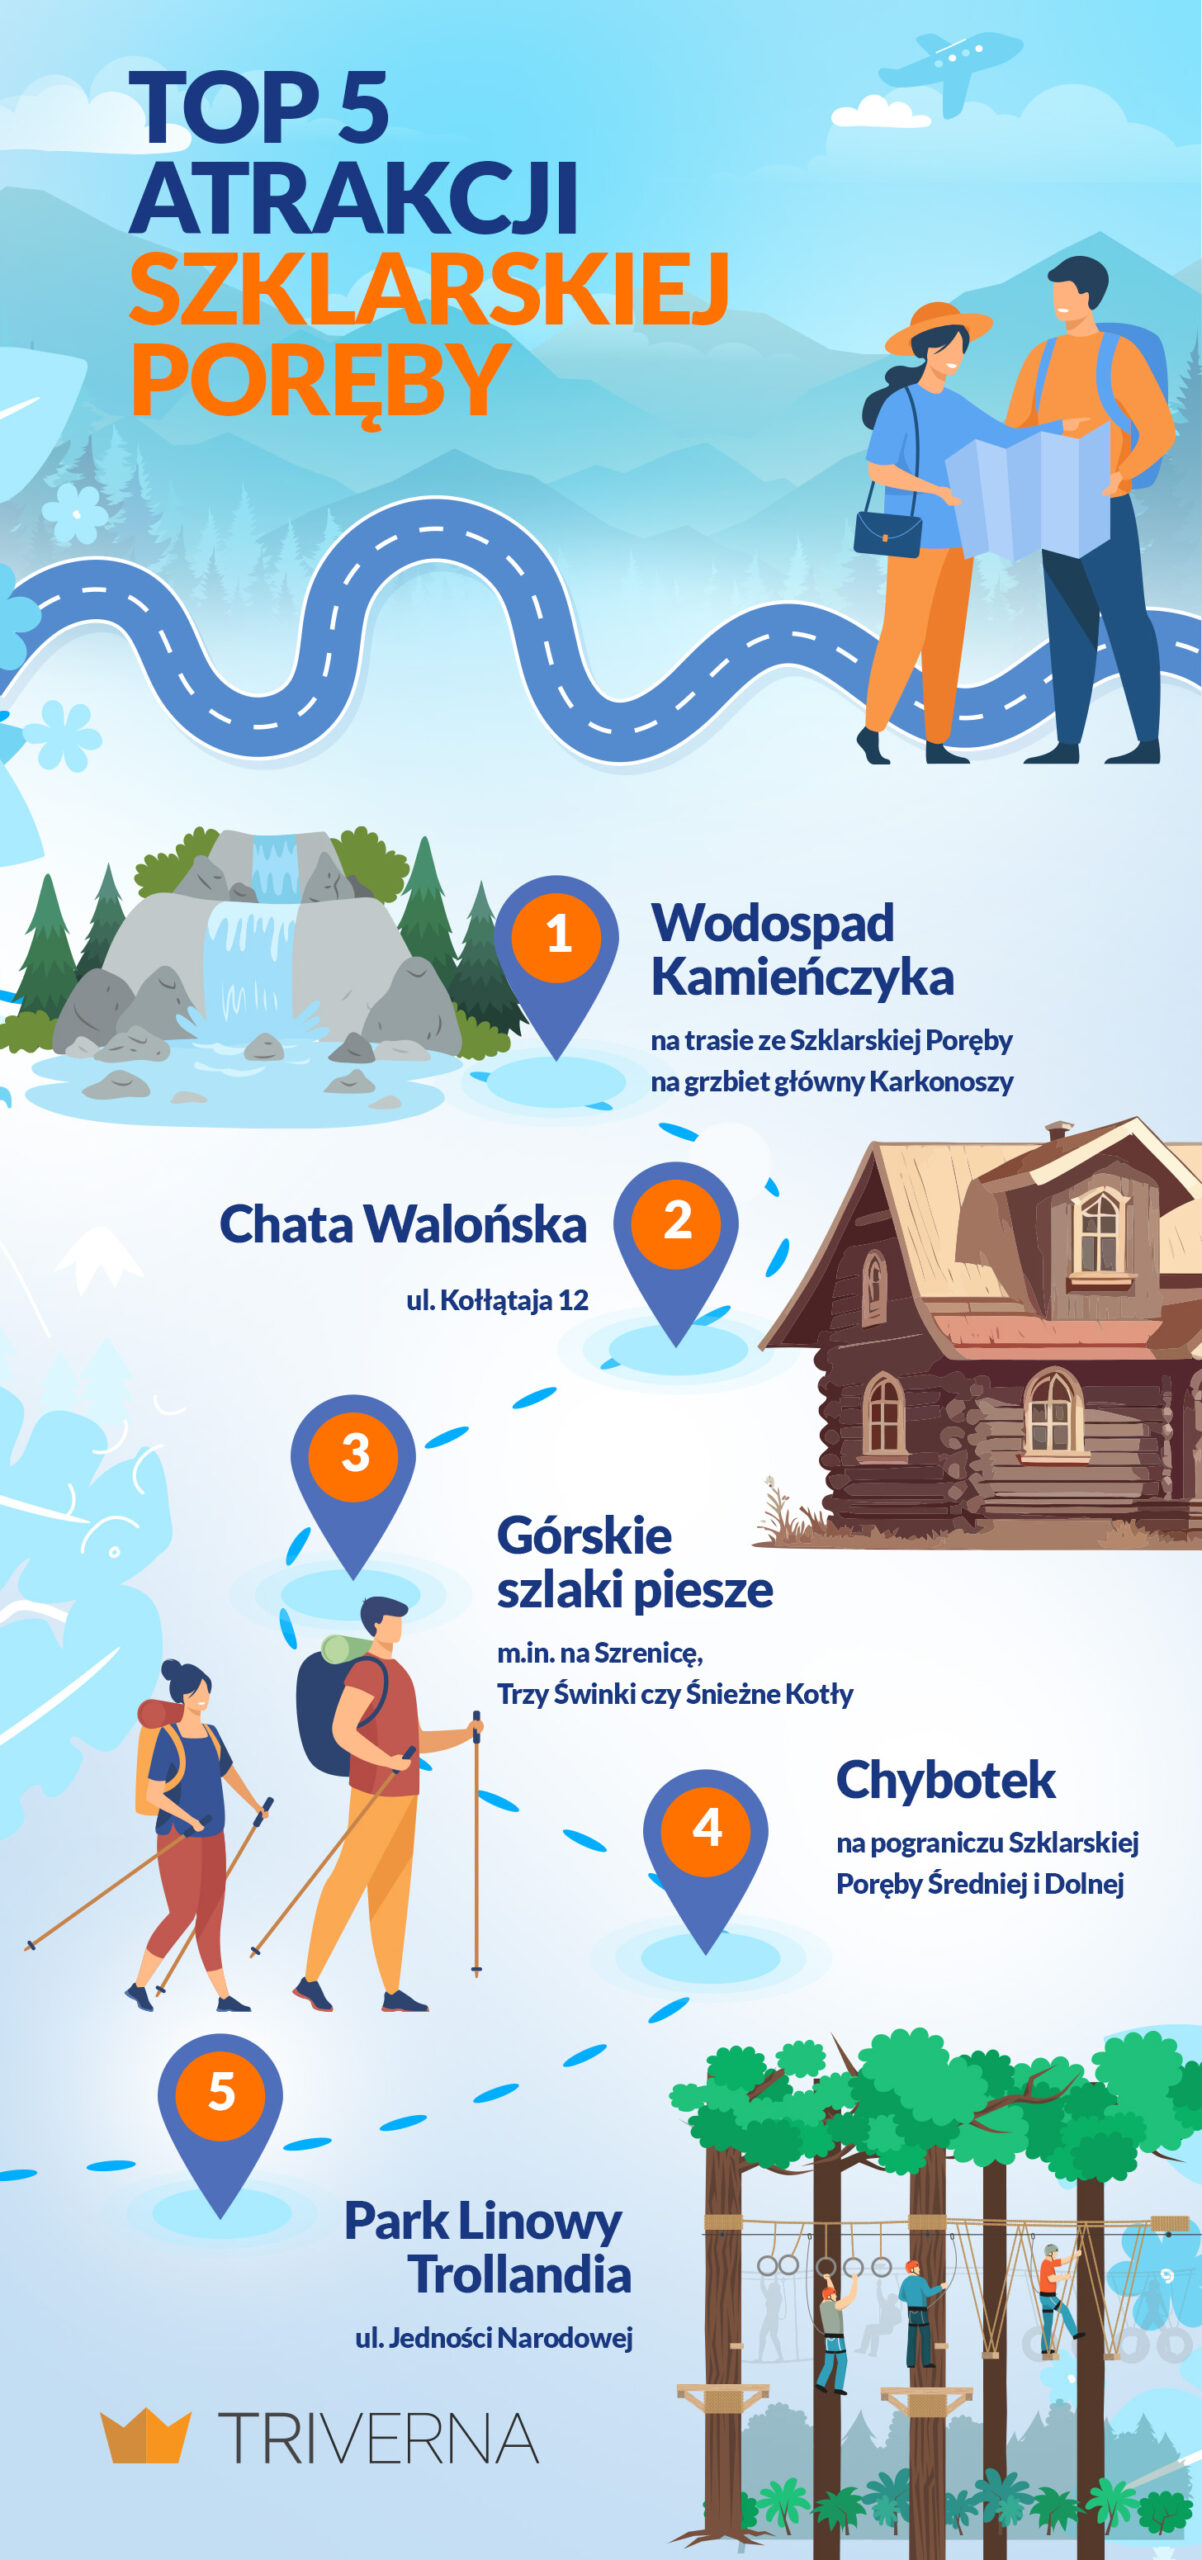 Top atrakcje Szklarskiej Poręby - infografika